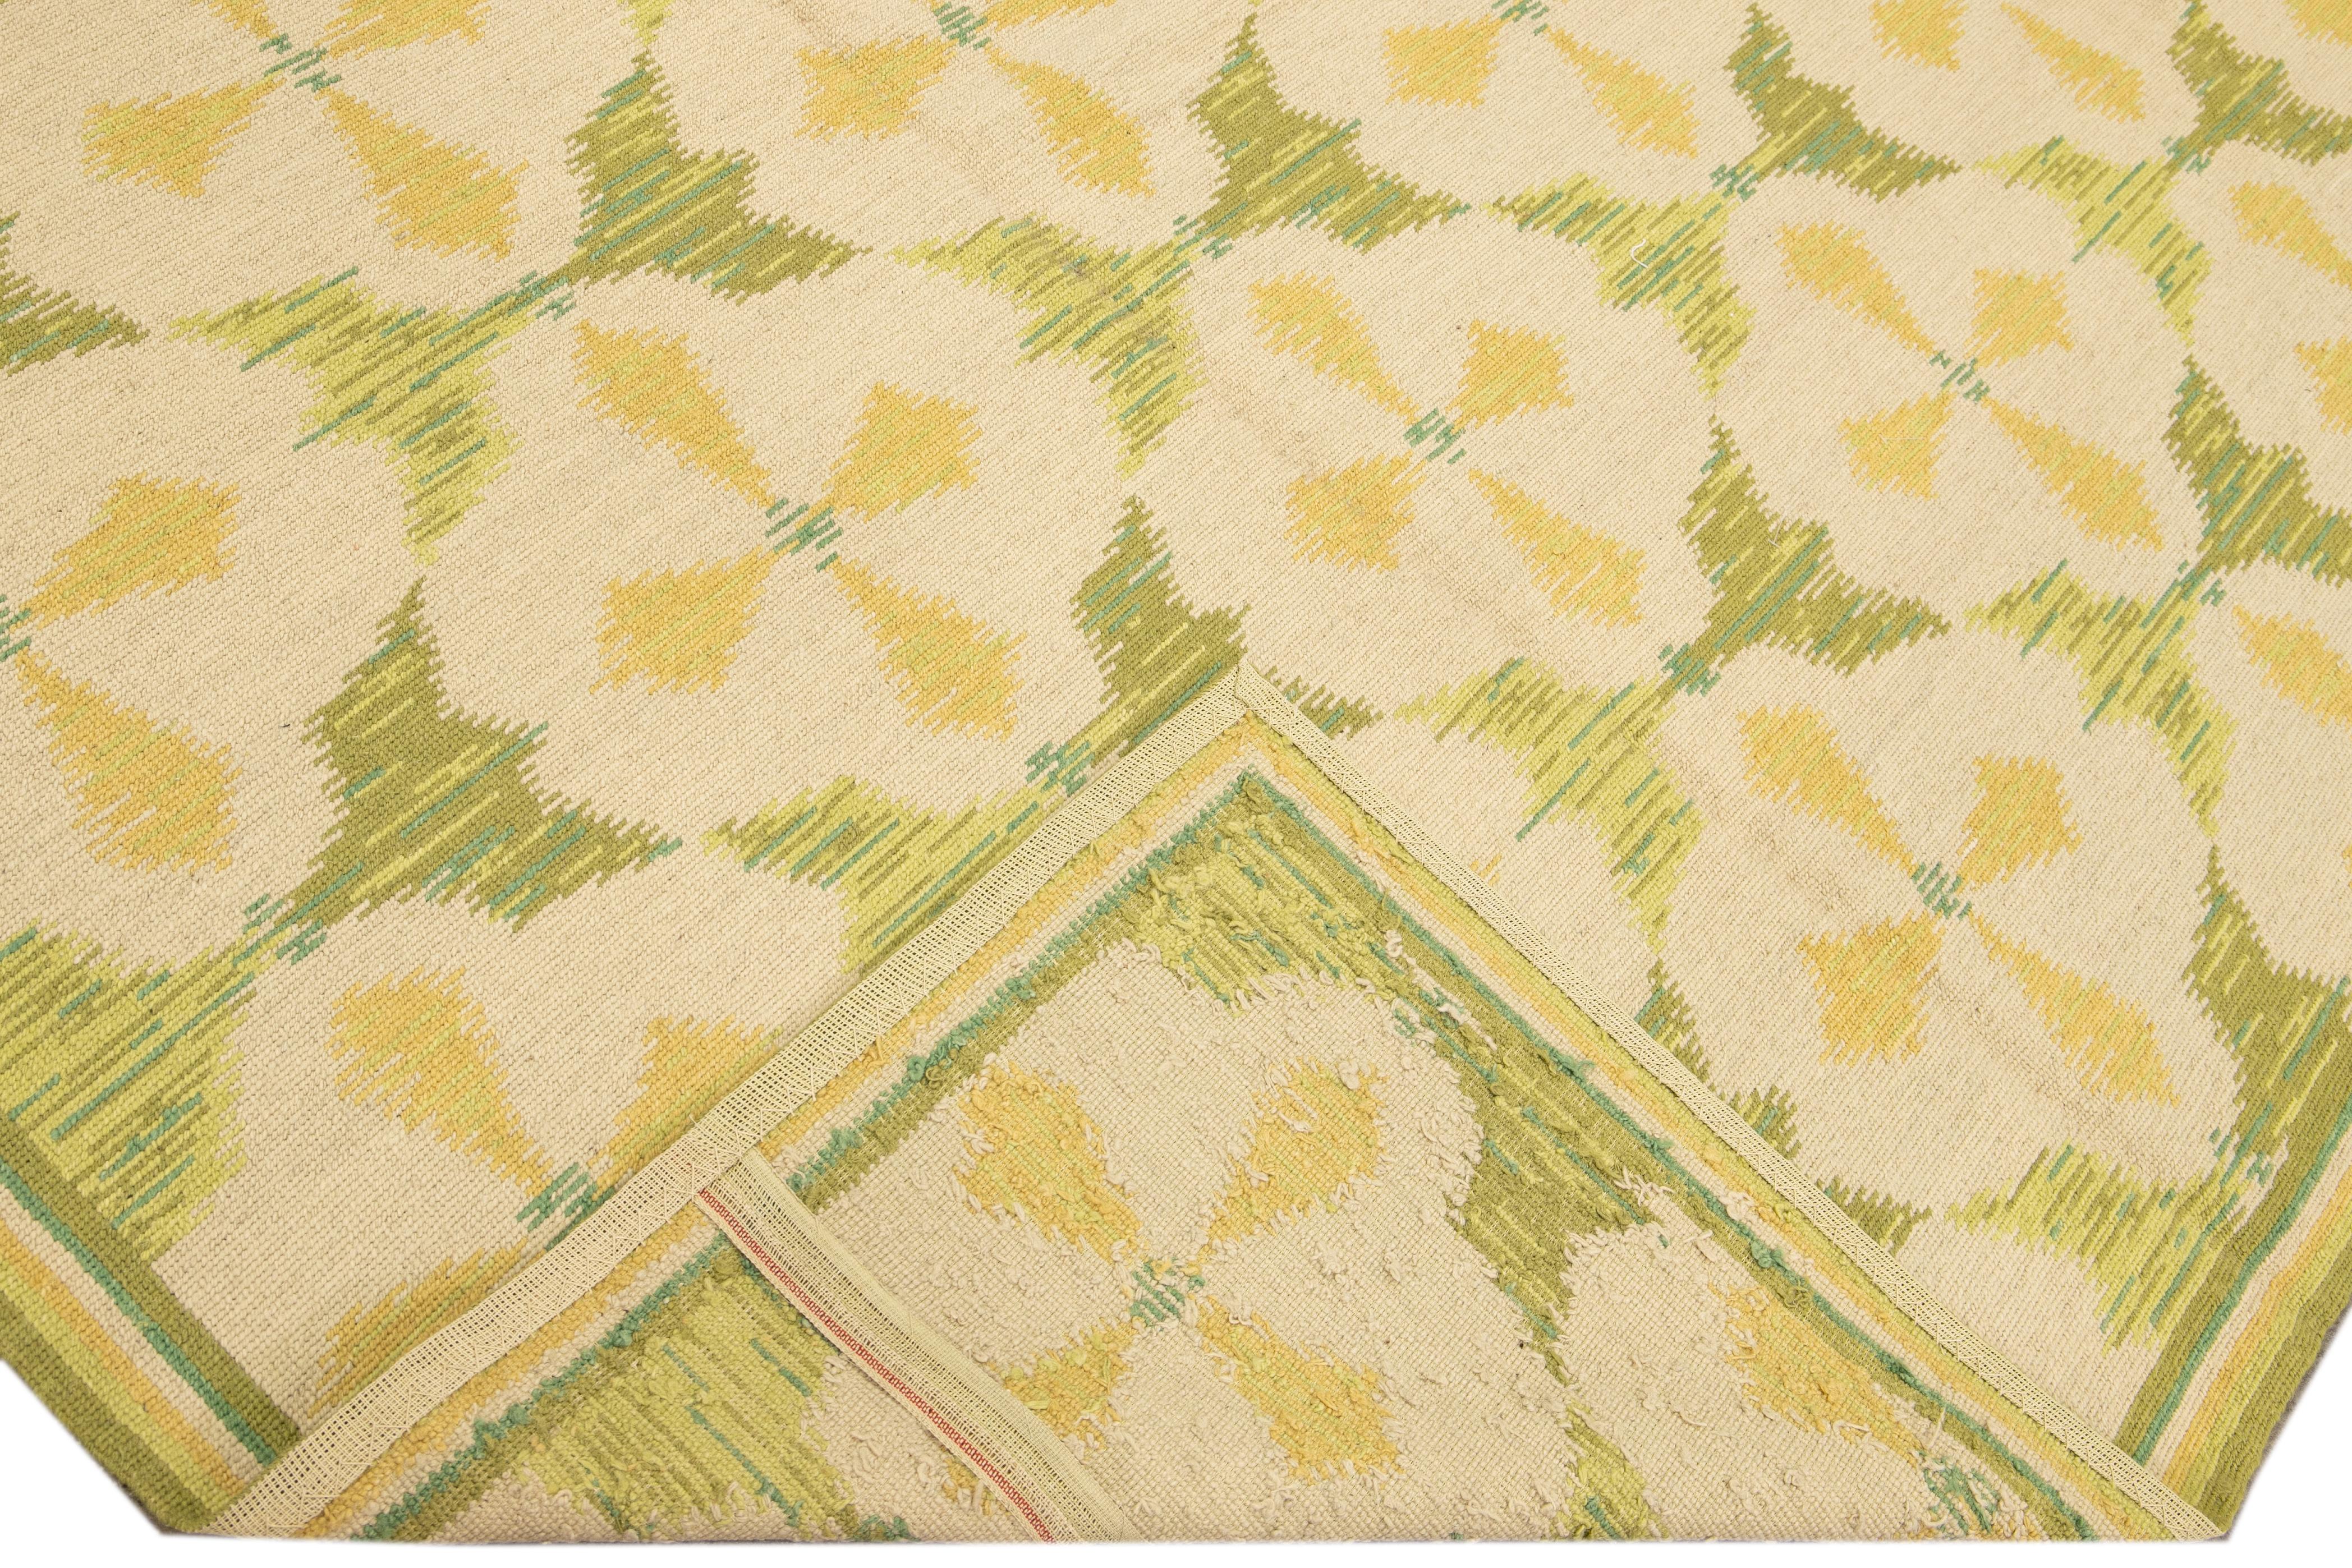 Schöner portugiesischer Arraiolos-Nadelspitze-Wollteppich mit grünem Feld. Dieses Stück hat feine Details in einem beigen und gelben Layout auf einem herrlichen Blumenmuster. 

Dieser Teppich misst: 8'11